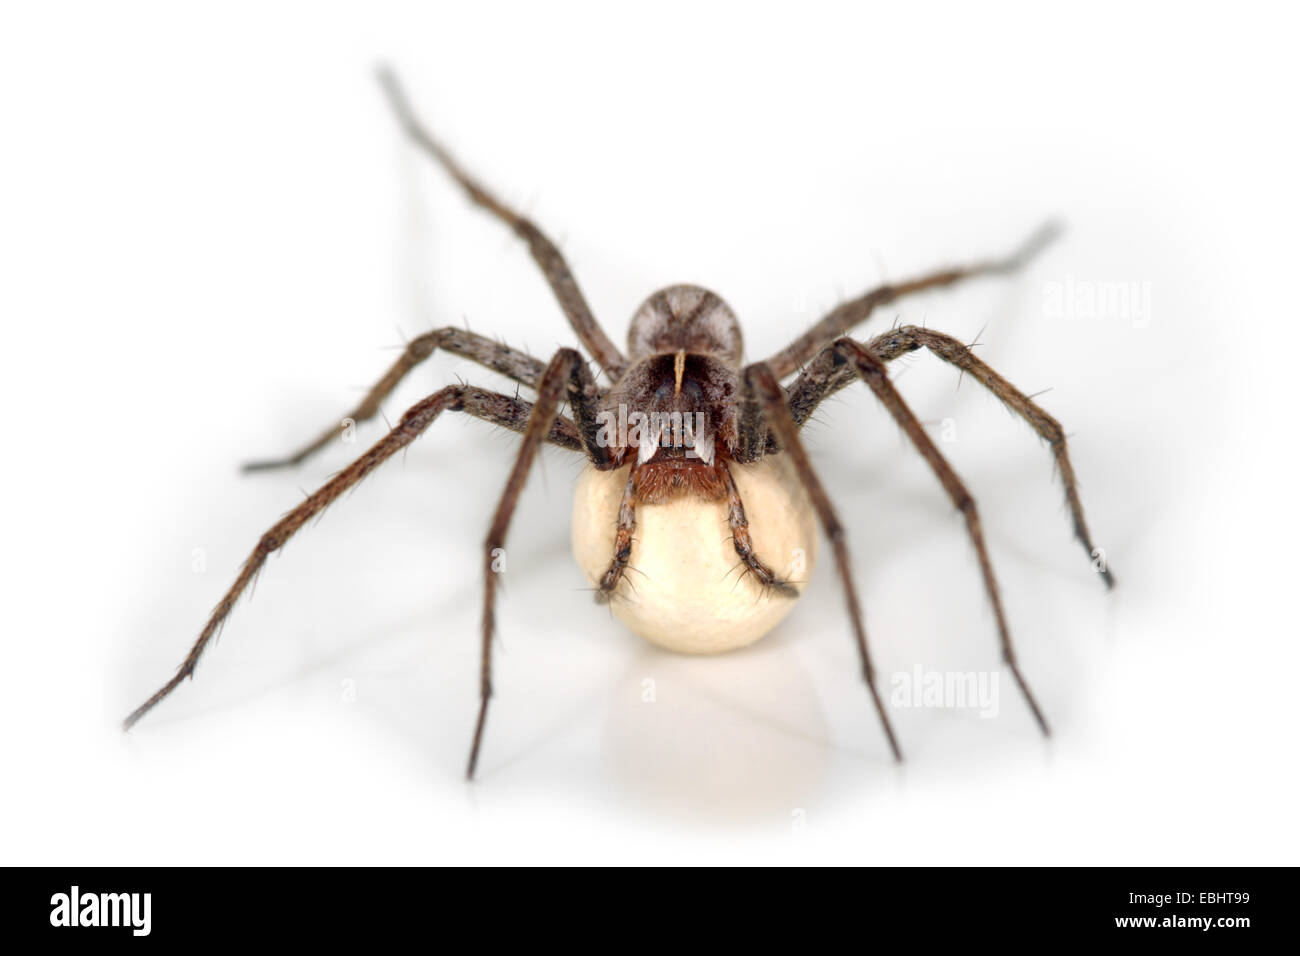 Pépinière femelle araignée Pisaura mirabilis (Web) sur un fond blanc. L'araignée est porteur d'un cocon. Famille : Pisauridae. Banque D'Images